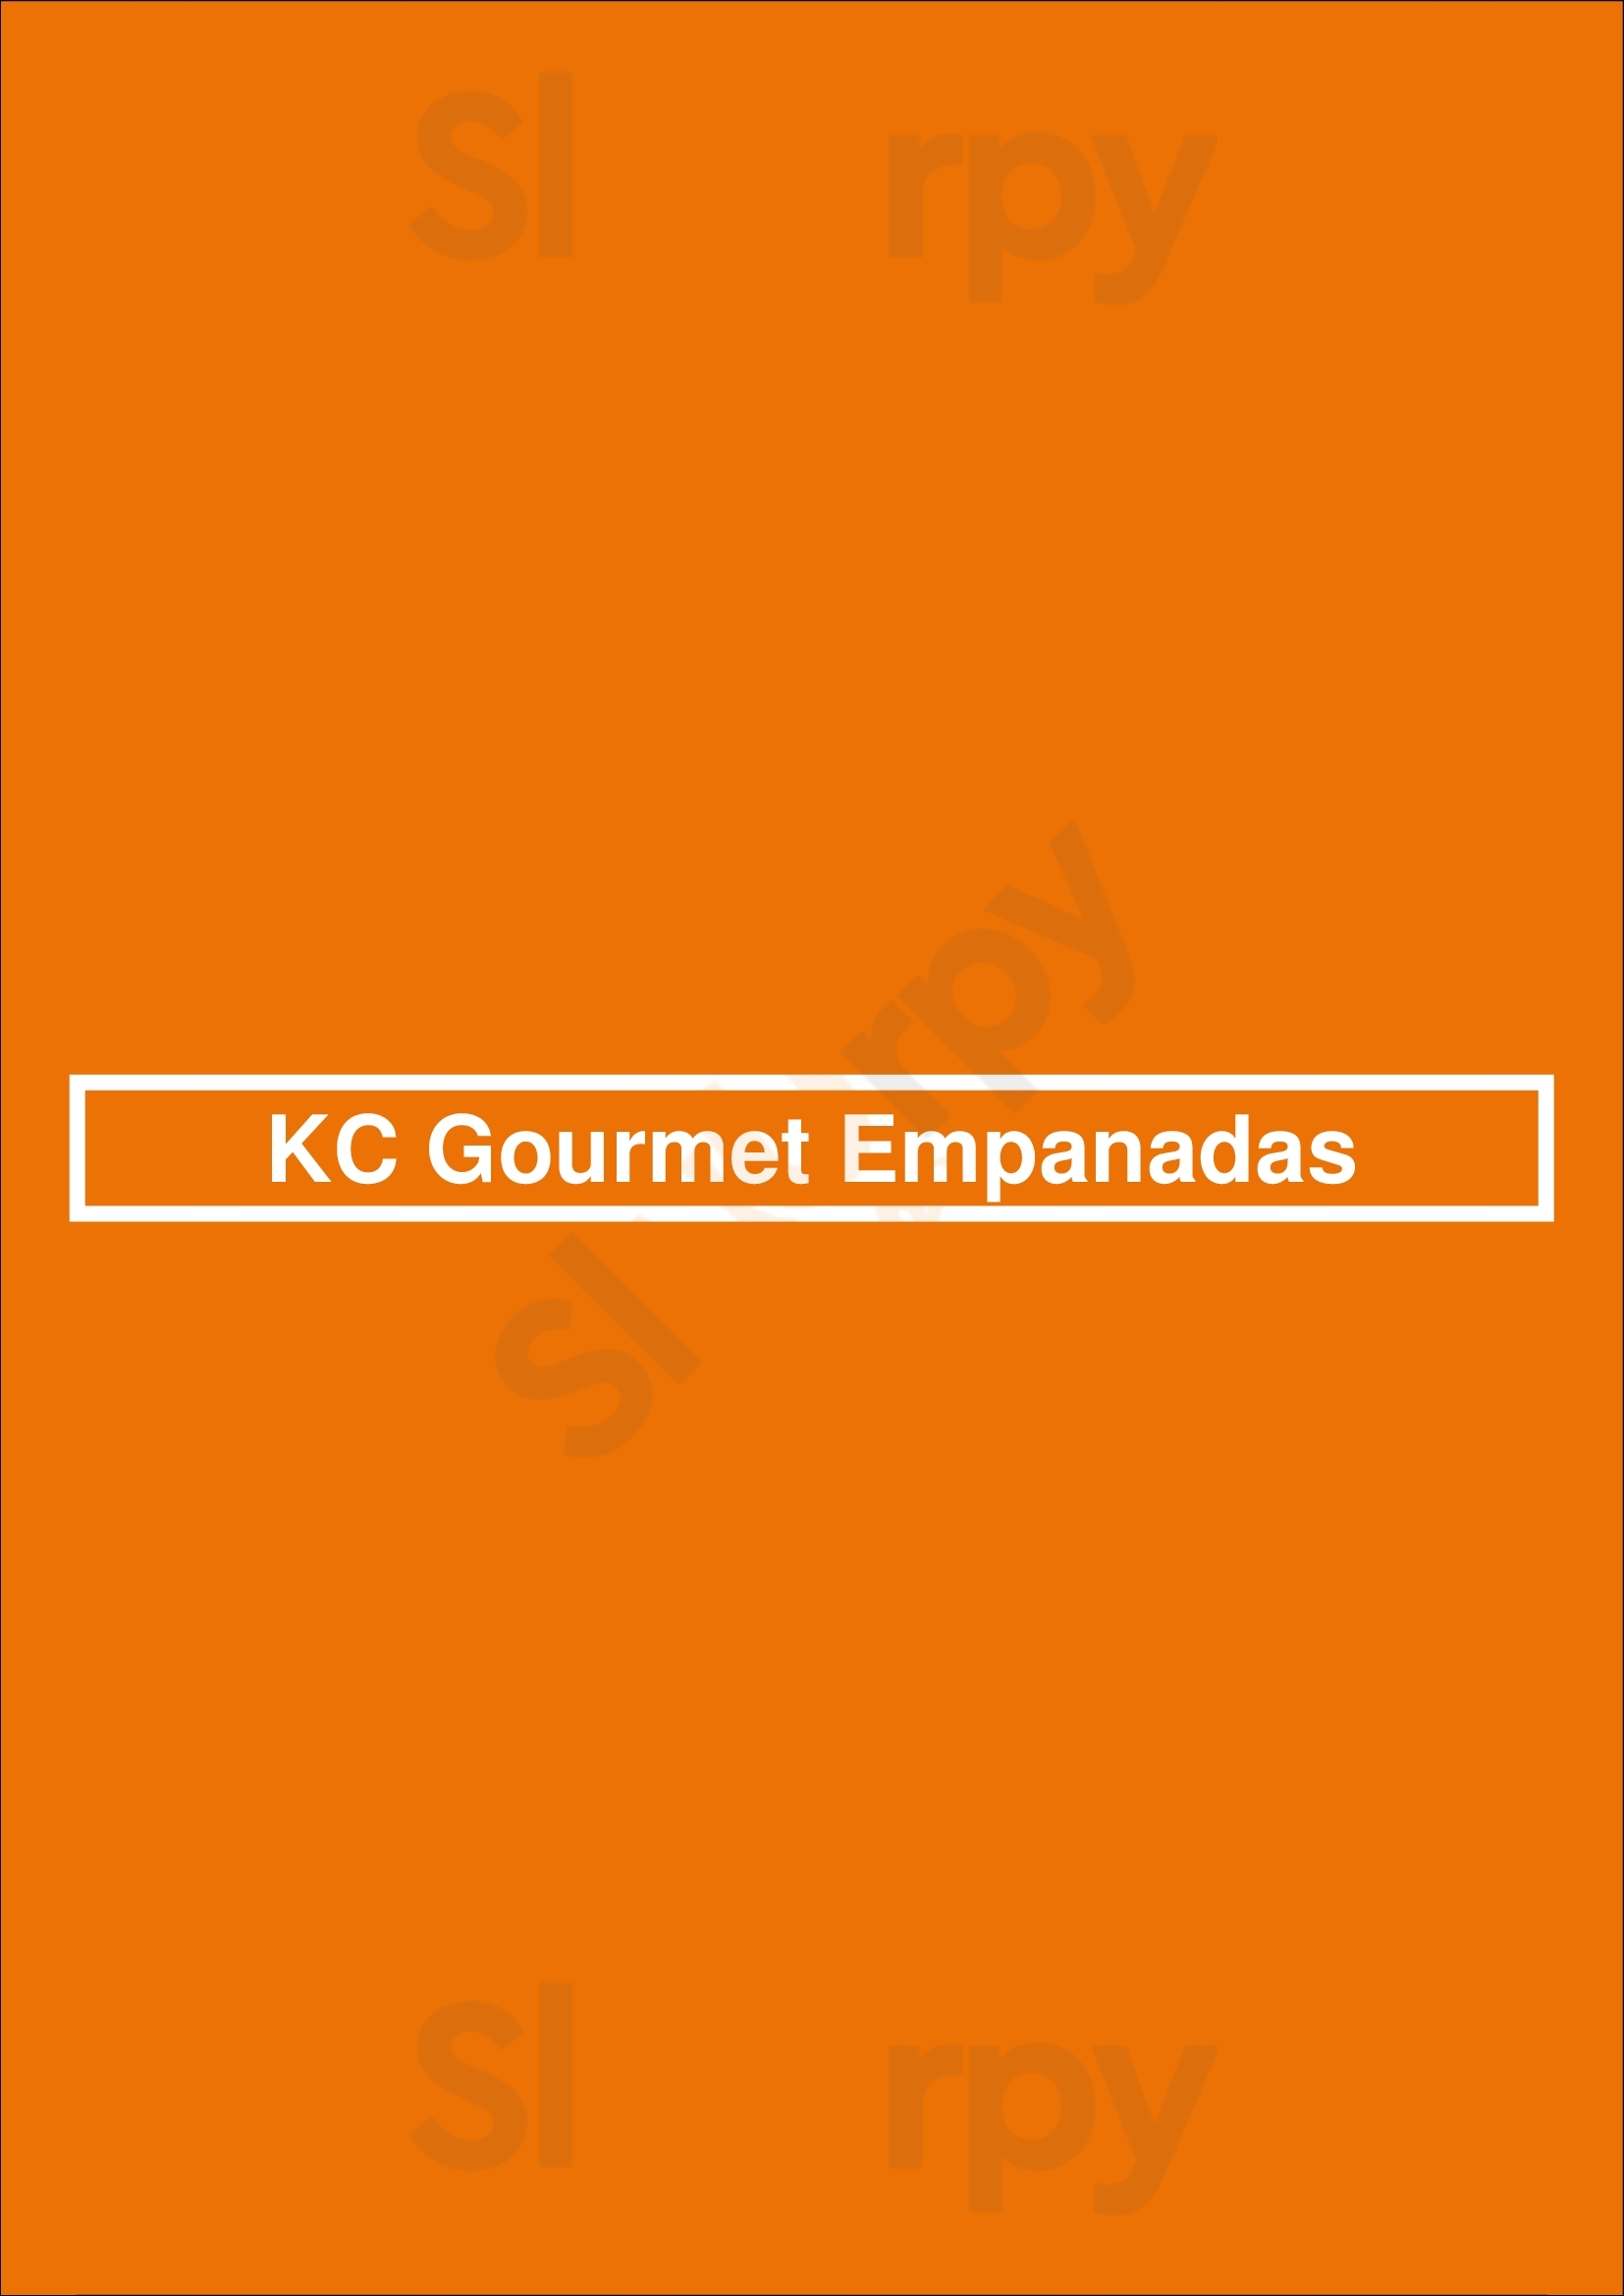 Kc Gourmet Empanadas New York City Menu - 1